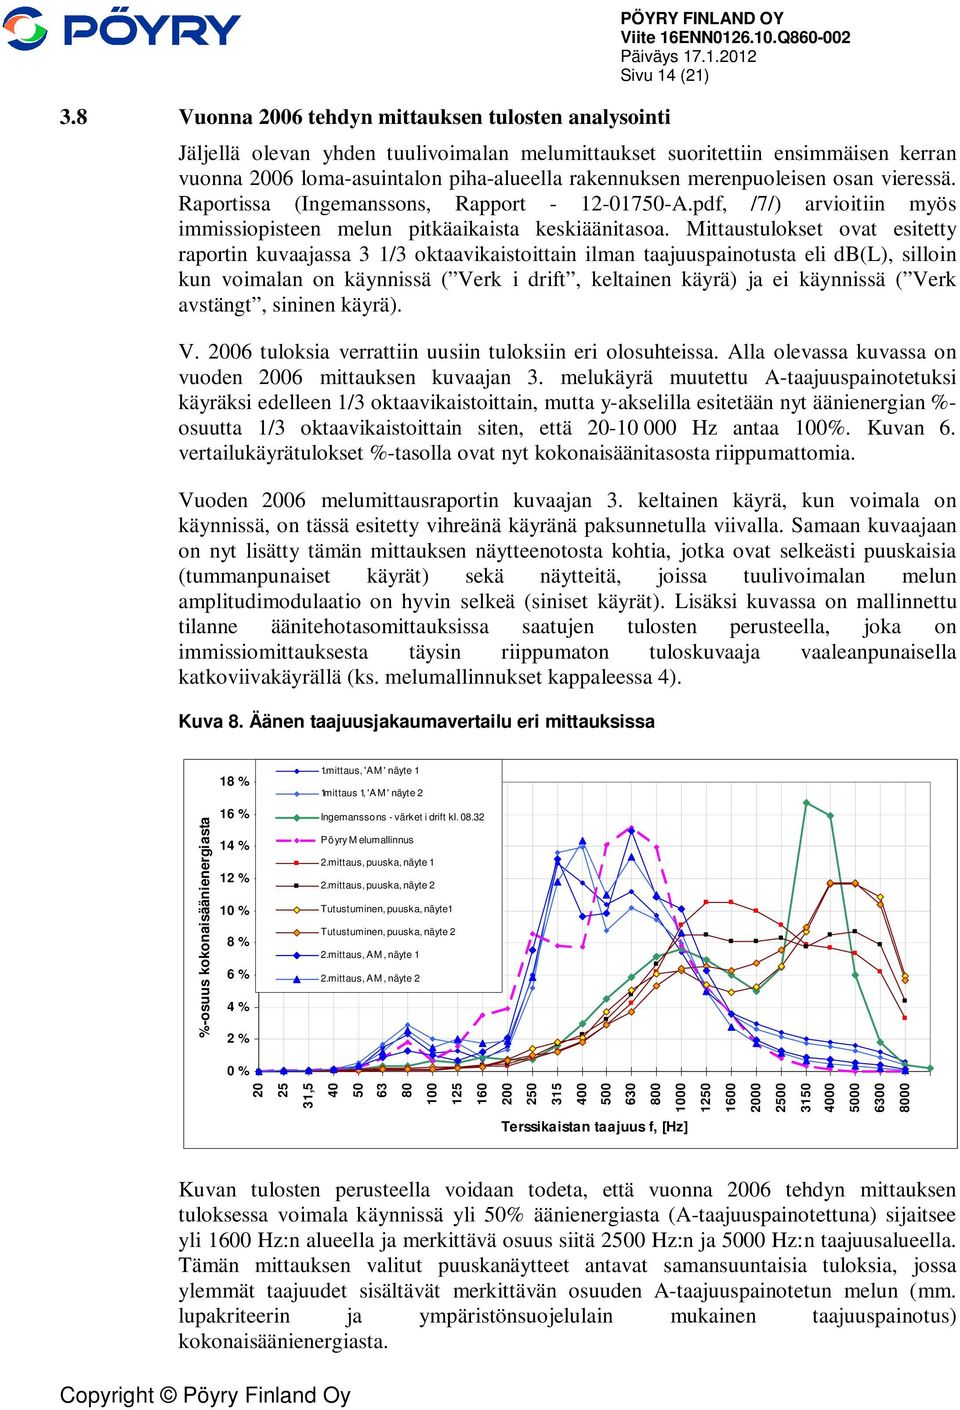 Raportissa (Ingemanssons, Rapport - 12-01750-A.pdf, /7/) arvioitiin myös immissiopisteen melun pitkäaikaista keskiäänitasoa.